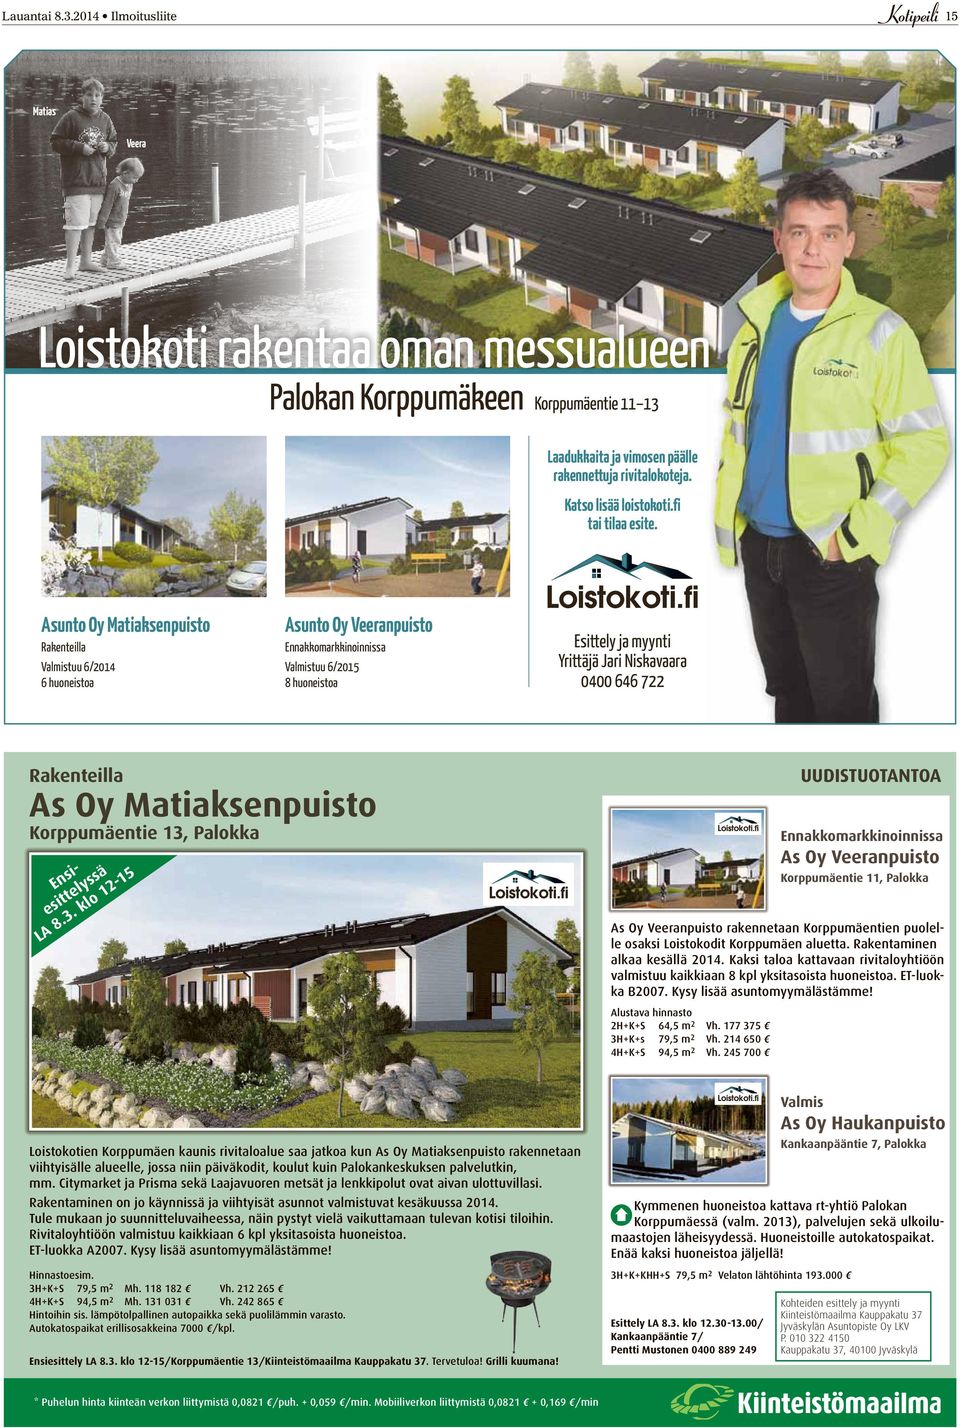 2014 Ilmoitusliite 15 Matias Veera Loistokoti rakentaa oman messualueen Palokan Korppumäkeen Korppumäentie 11 13 Laadukkaita ja vimosen päälle rakennettuja rivitalokoteja. Katso lisää loistokoti.